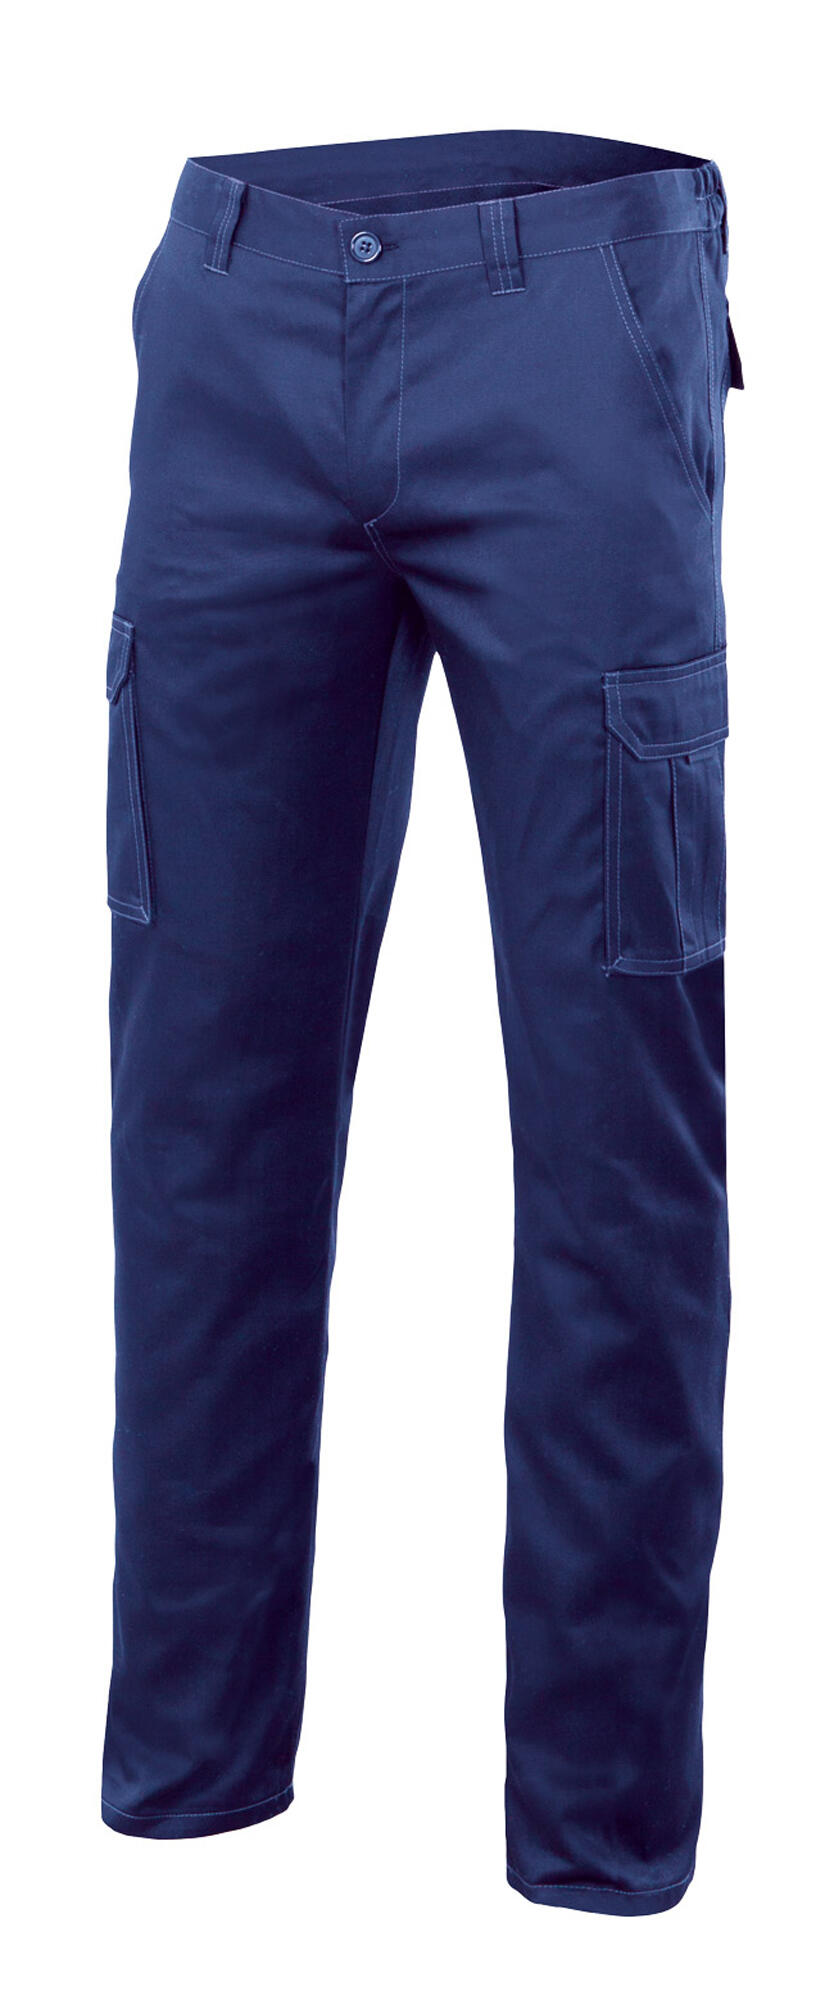 Pantalon de trabajo multibolsillo stretch azulina t56